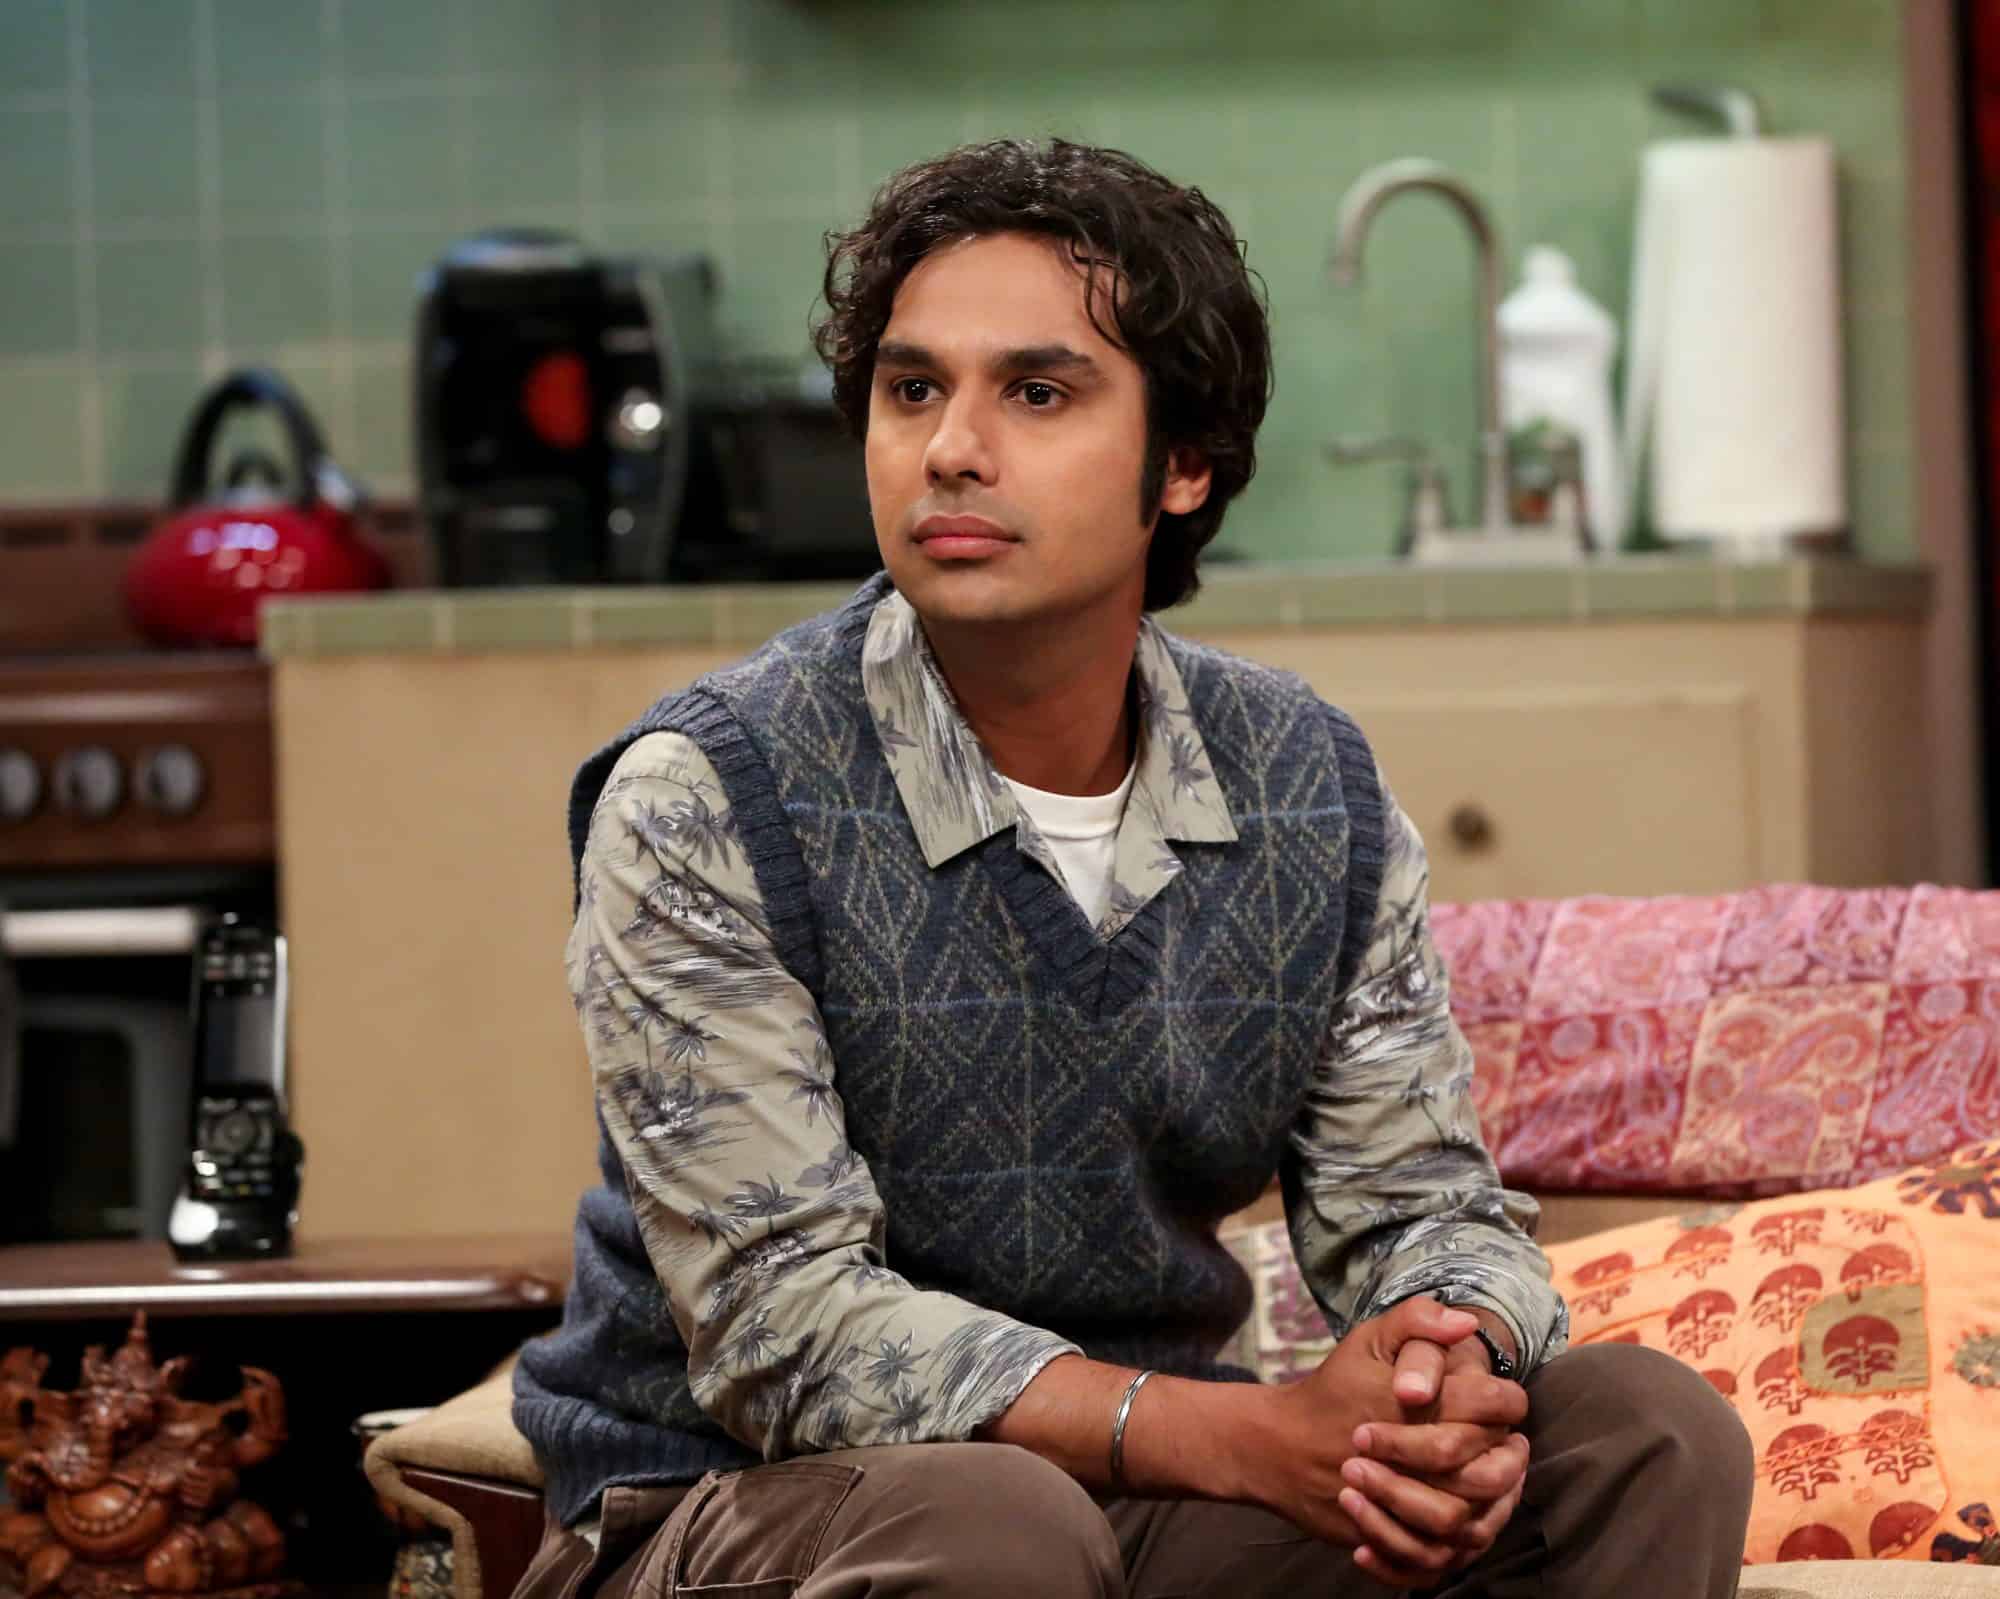 Ator de The Big Bang Theory surge em papel diferente em trailer de série